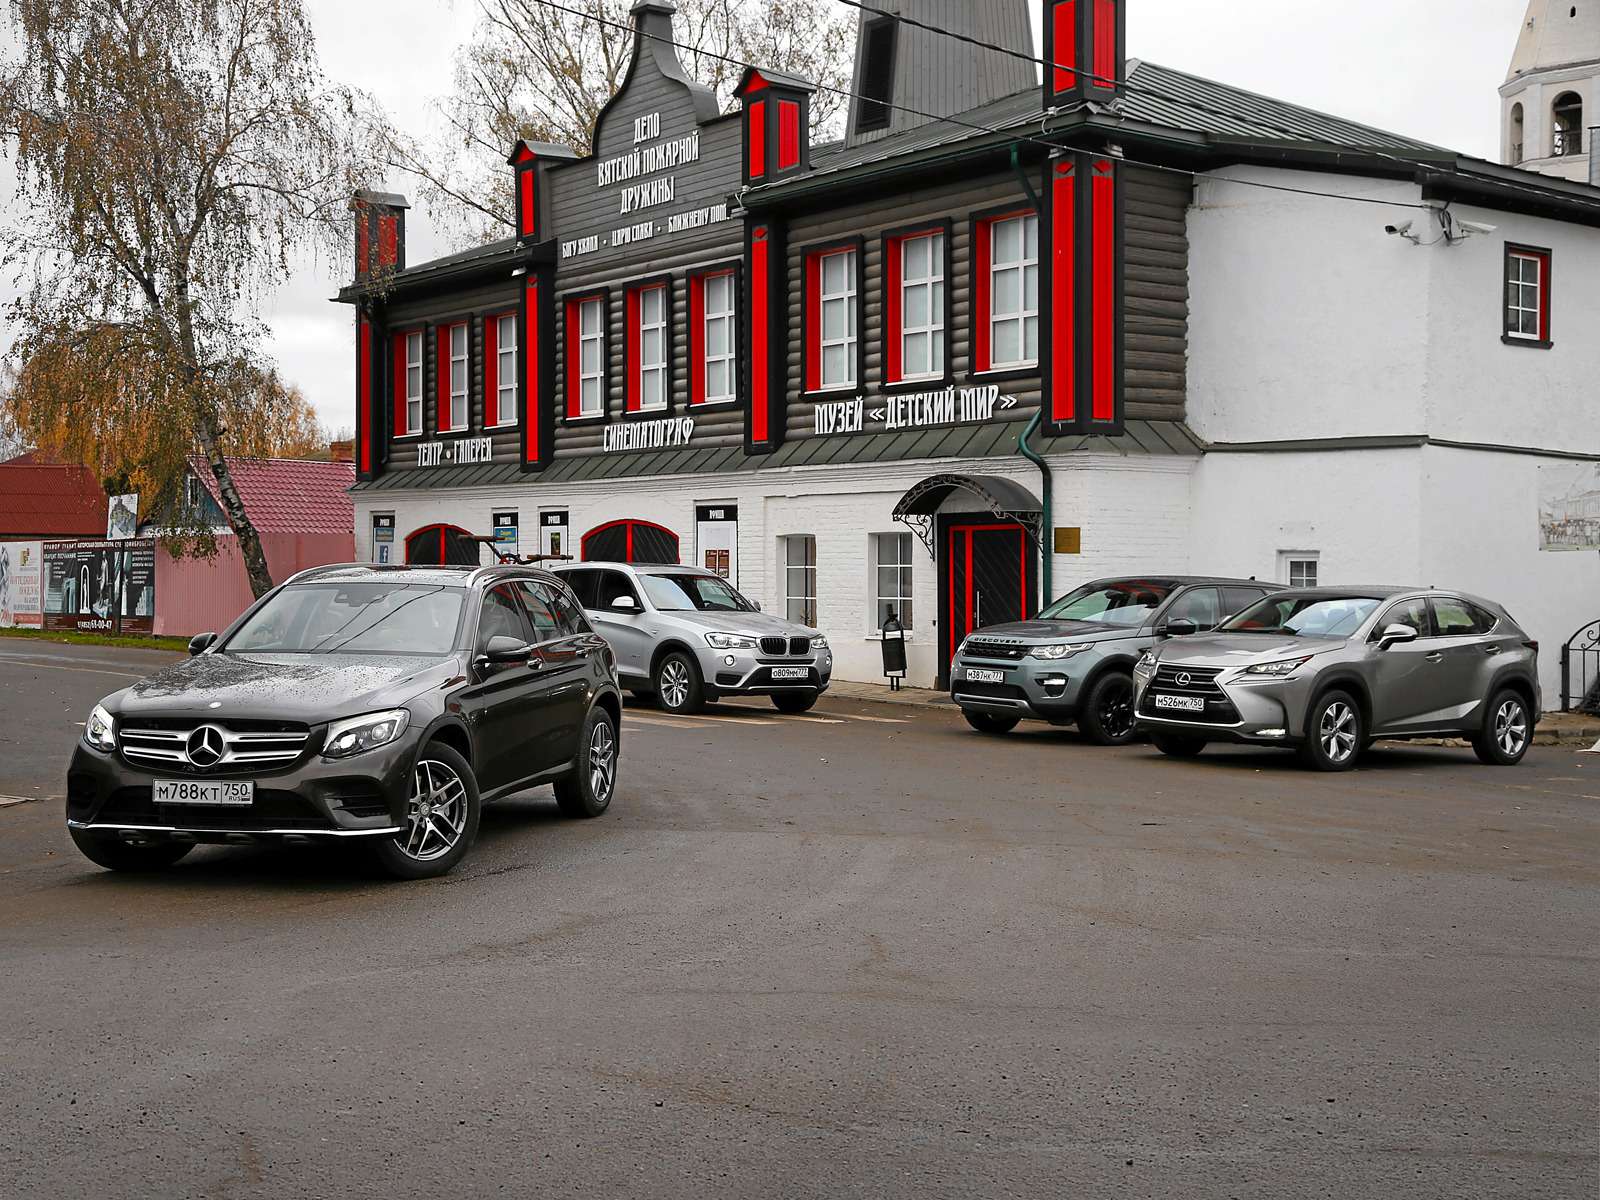  Mercedes-Benz GLC 300 (2,0 л, бензин, 245 л.с., 9‑ступенчатый автомат) – 4 181 000 руб.; BMW X3 xDrive 20i (2,0 л, бензин, 184 л.с., 8‑ступенчатый автомат) – 3 903 480 руб.; Land Rover Discovery Sport 2.0 Si4 (2,0 л, бензин, 240 л.с., 9‑ступенчатый автомат) – 3 504 400 руб.; Lexus NX 200t (2,0 л, бензин, 238 л.с., 6‑ступенчатый автомат) – 2 804 000 руб.